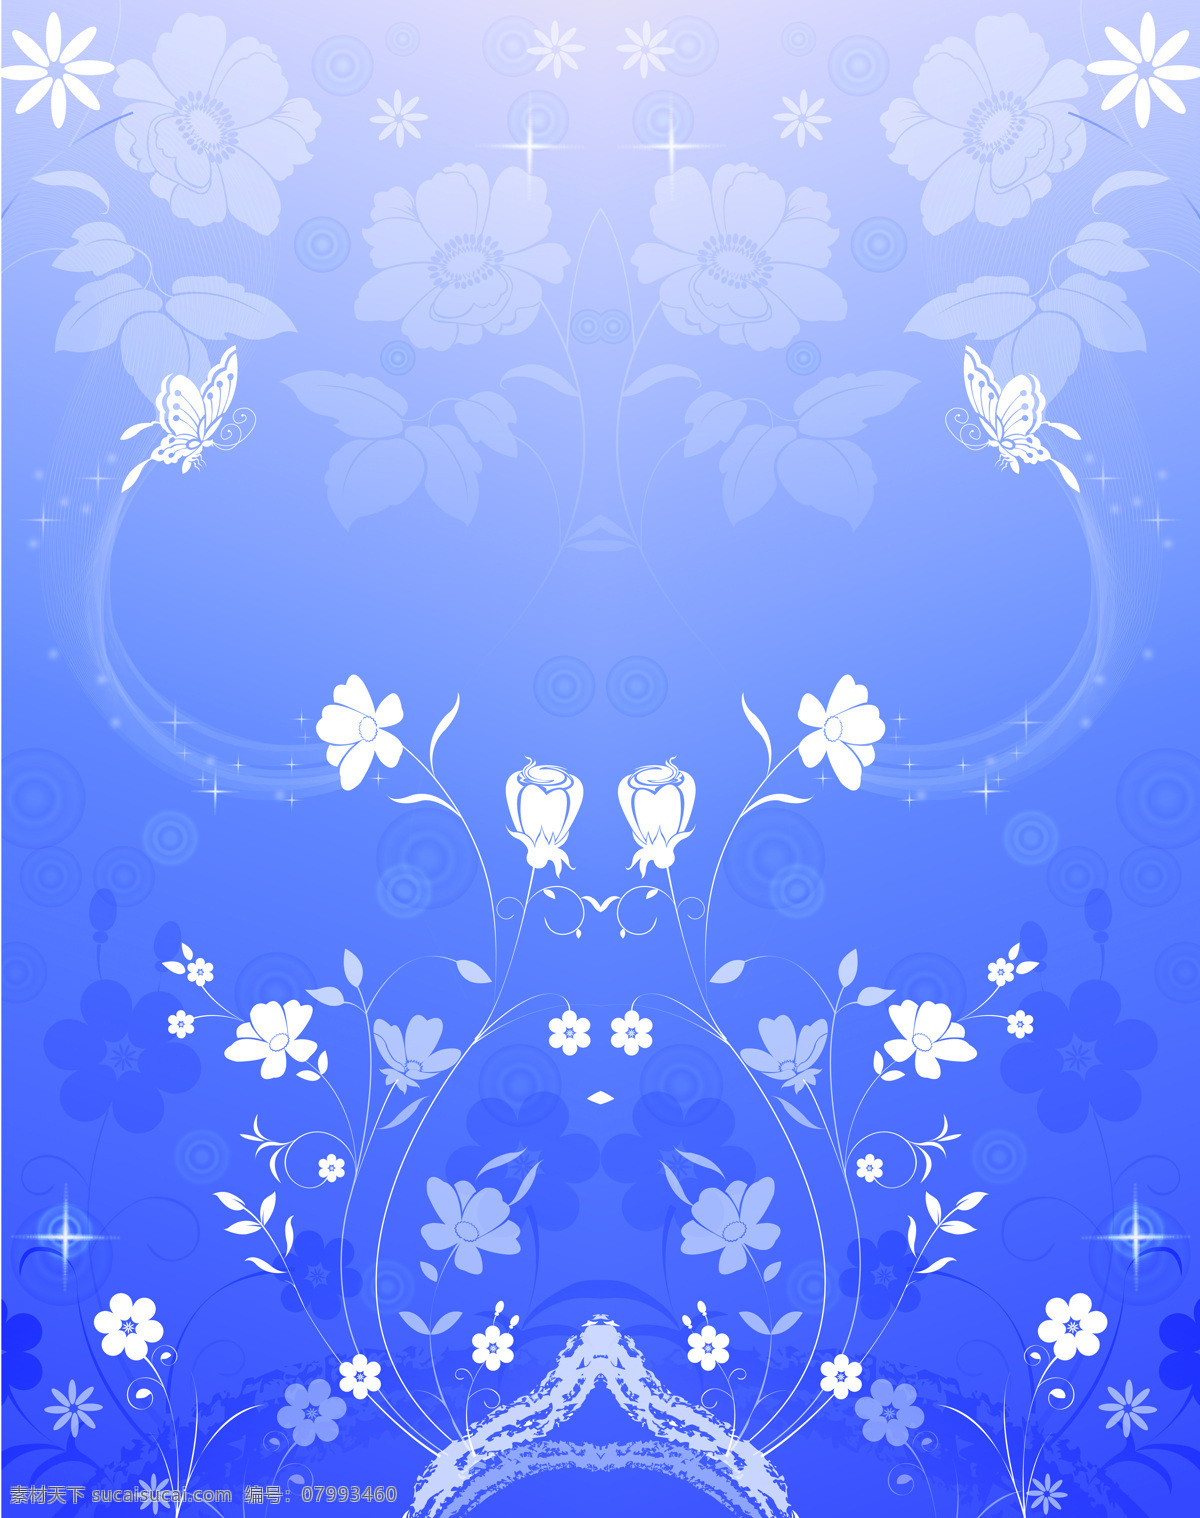 相依免费下载 对称 花藤 花枝 蓝色背景 星光 索亚 c3207 暗底 被色花朵 家居装饰素材 移门